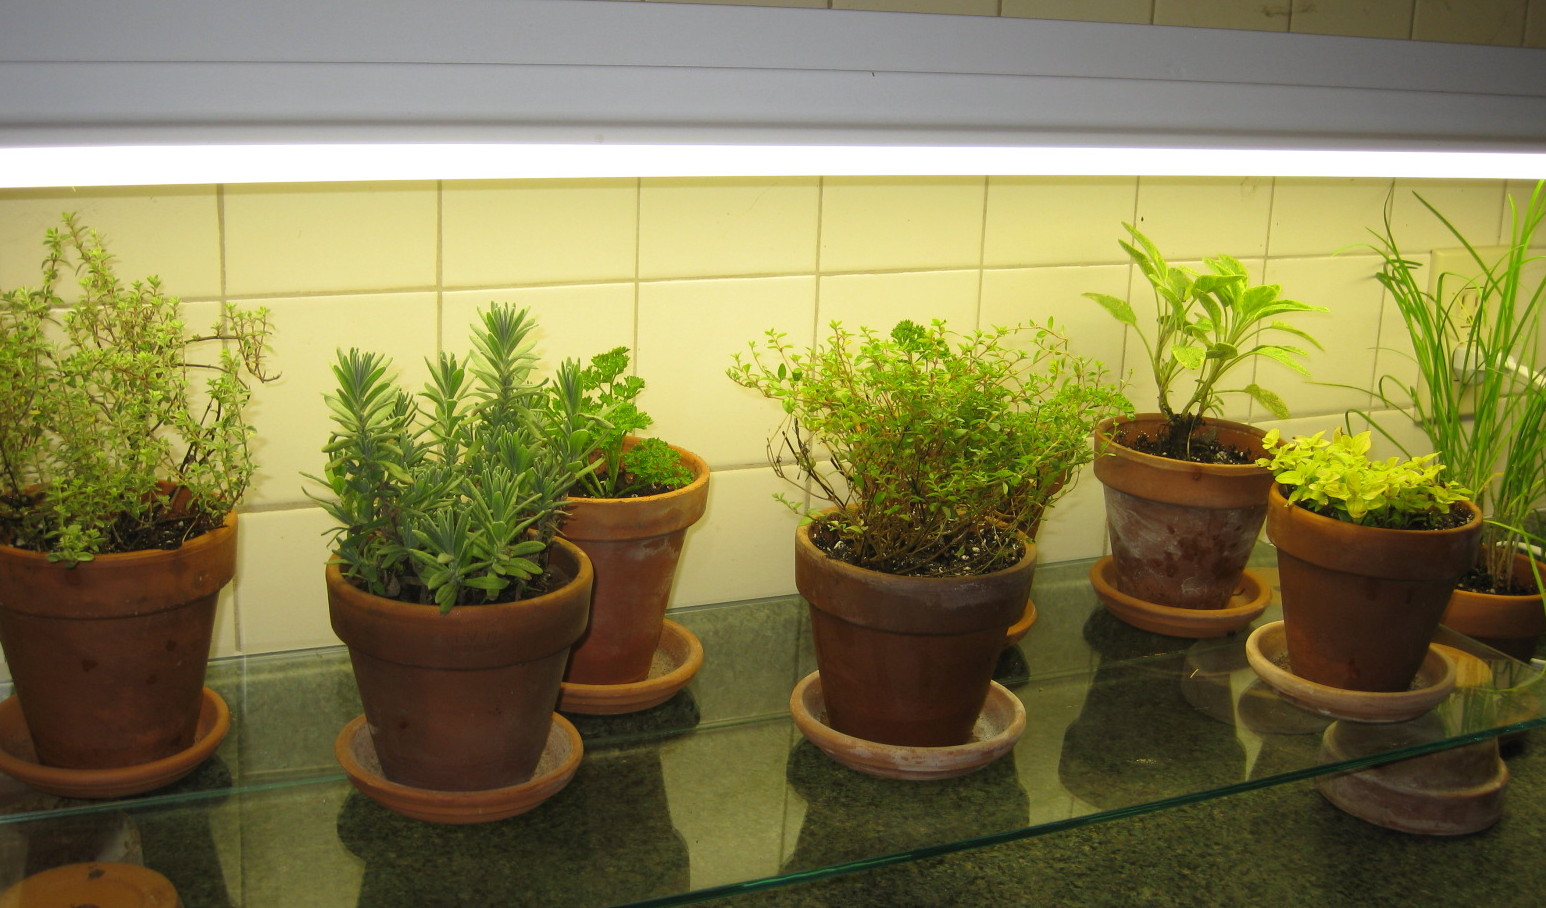 kitchen herb garden design